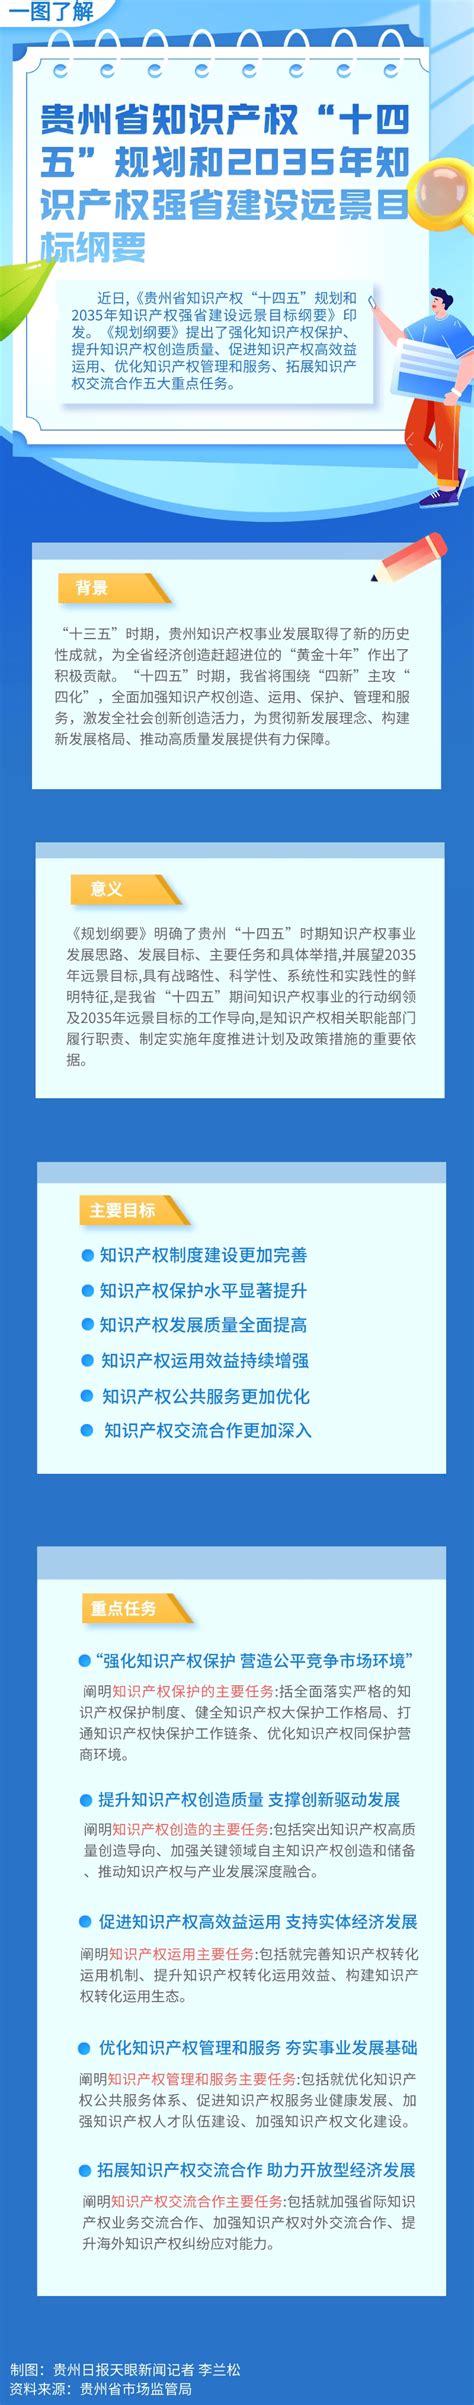 一图了解贵州省知识产权“十四五”规划和2035年远景目标纲要_发展